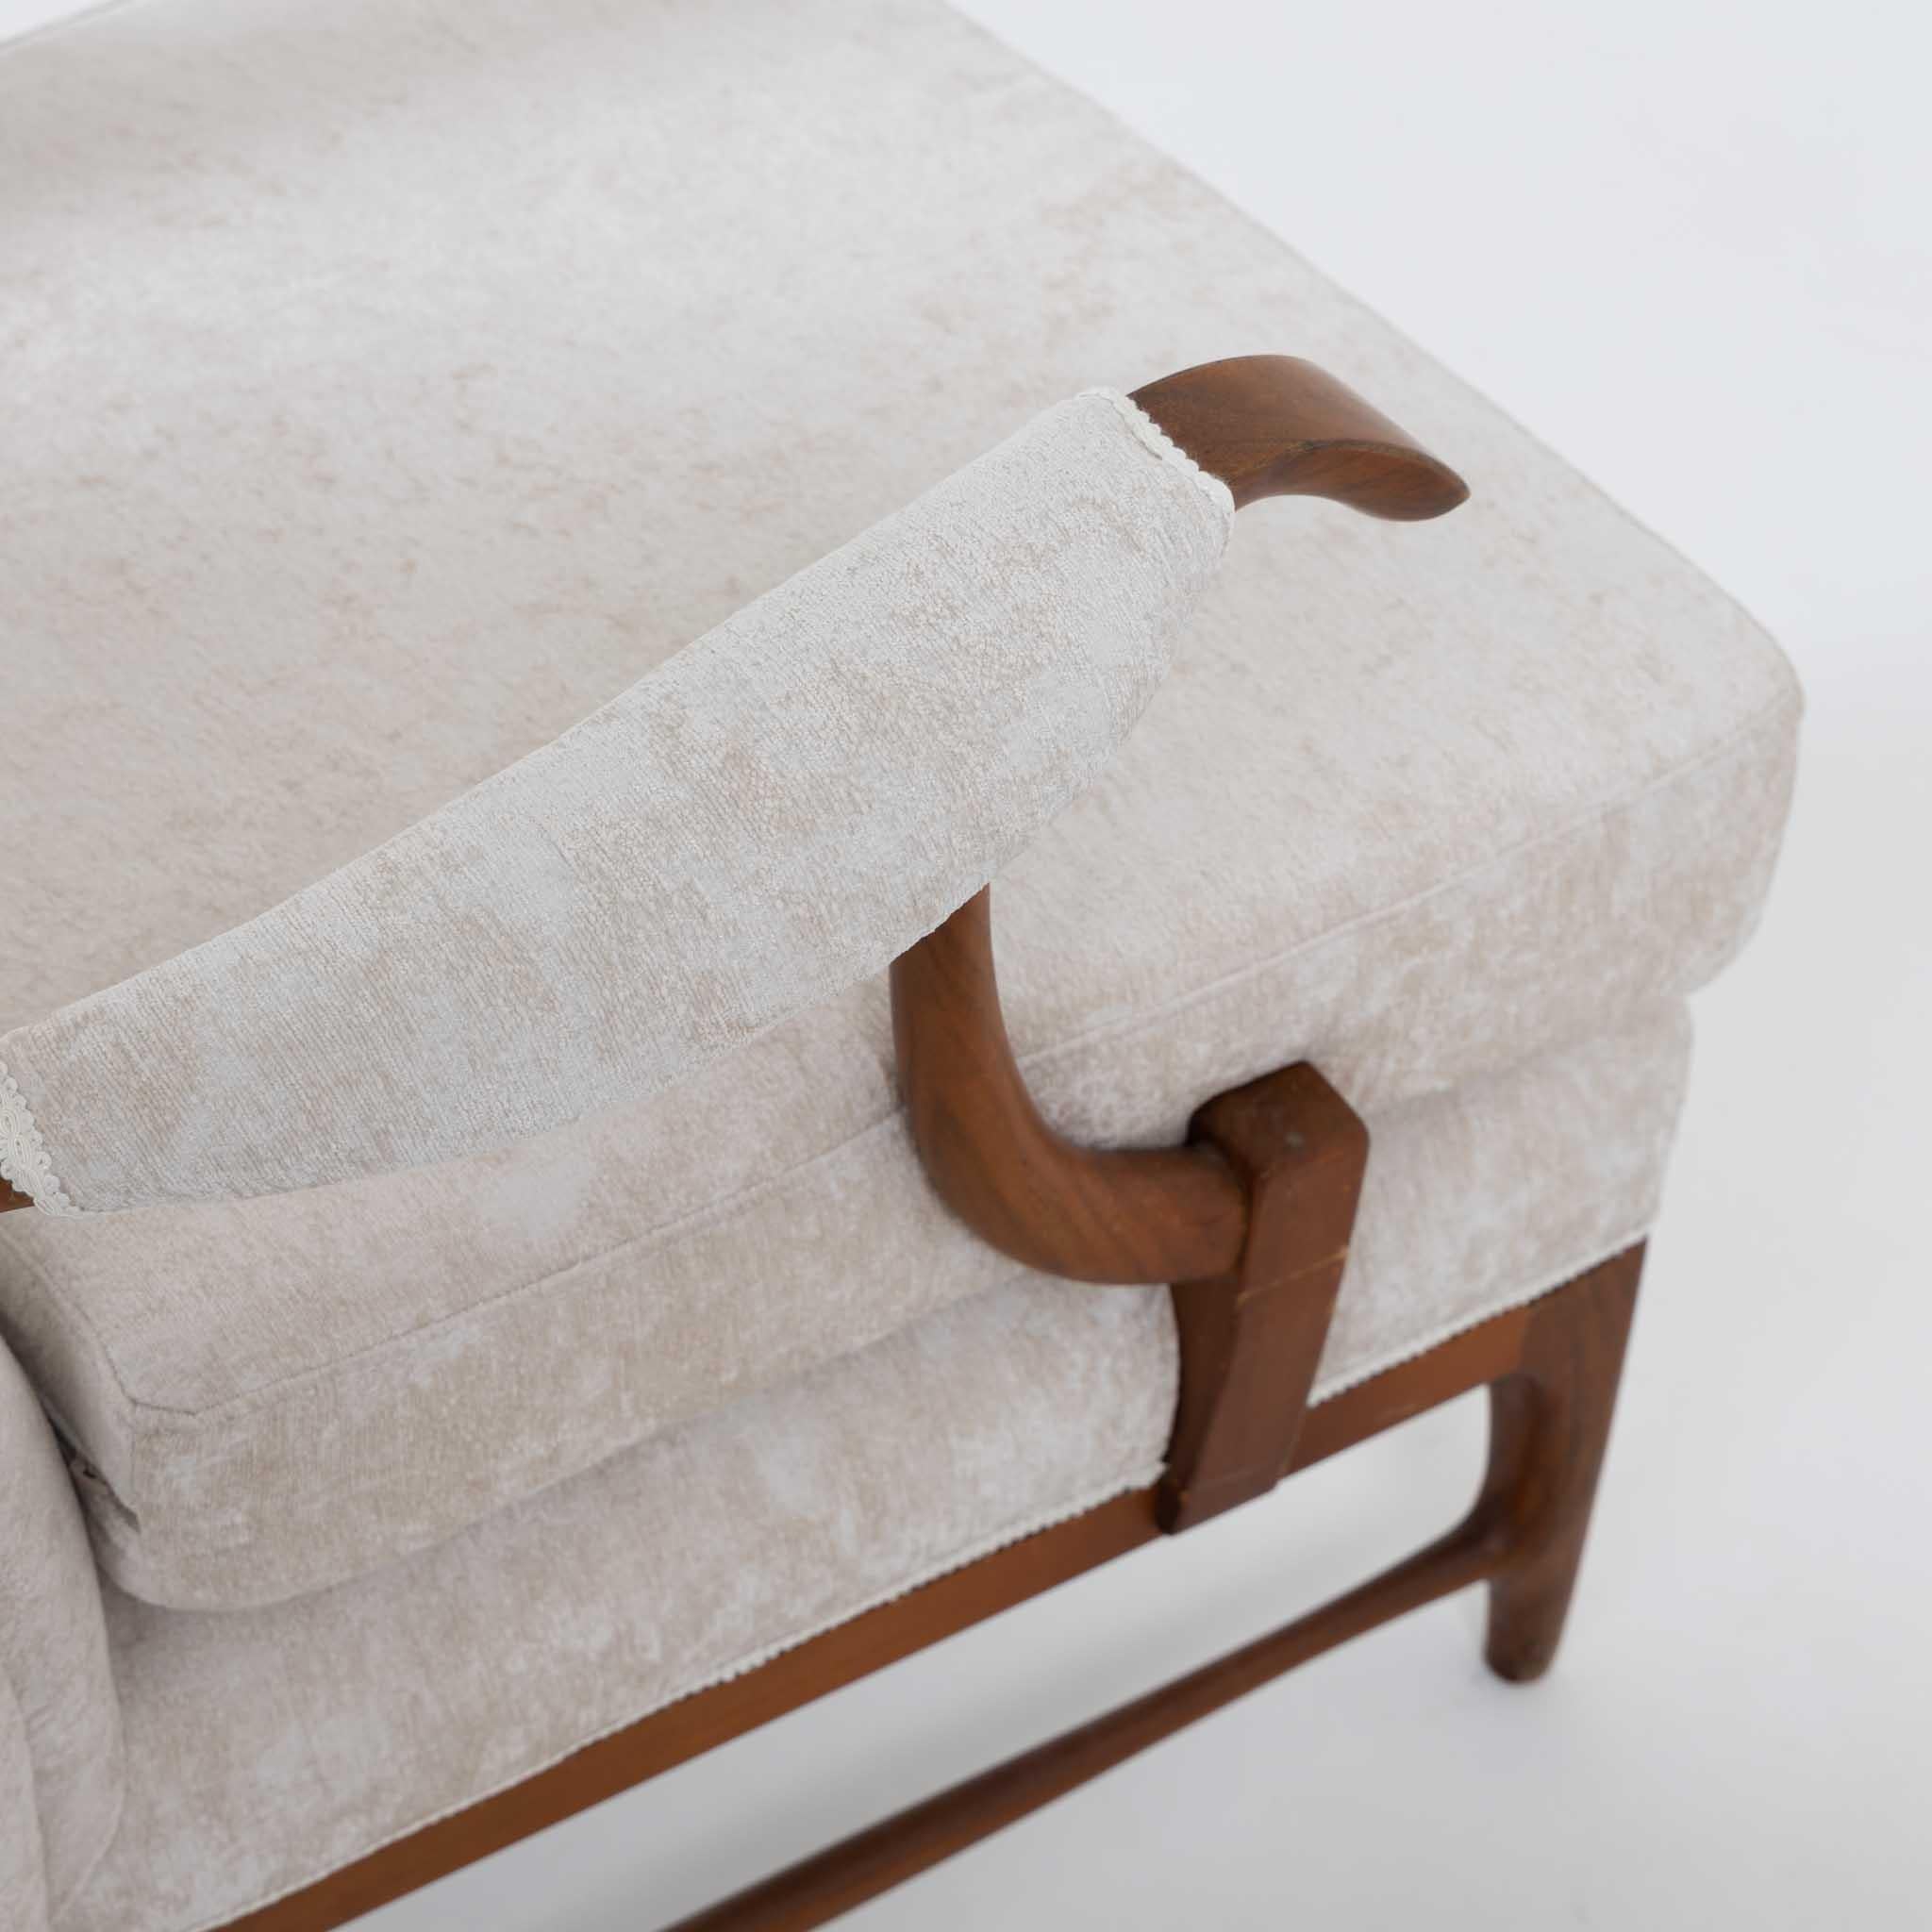 Ein Paar modernistische Sessel von Paolo Buffa. 
Holzrahmen mit gepolsterter Rückenlehne und Armlehnen.